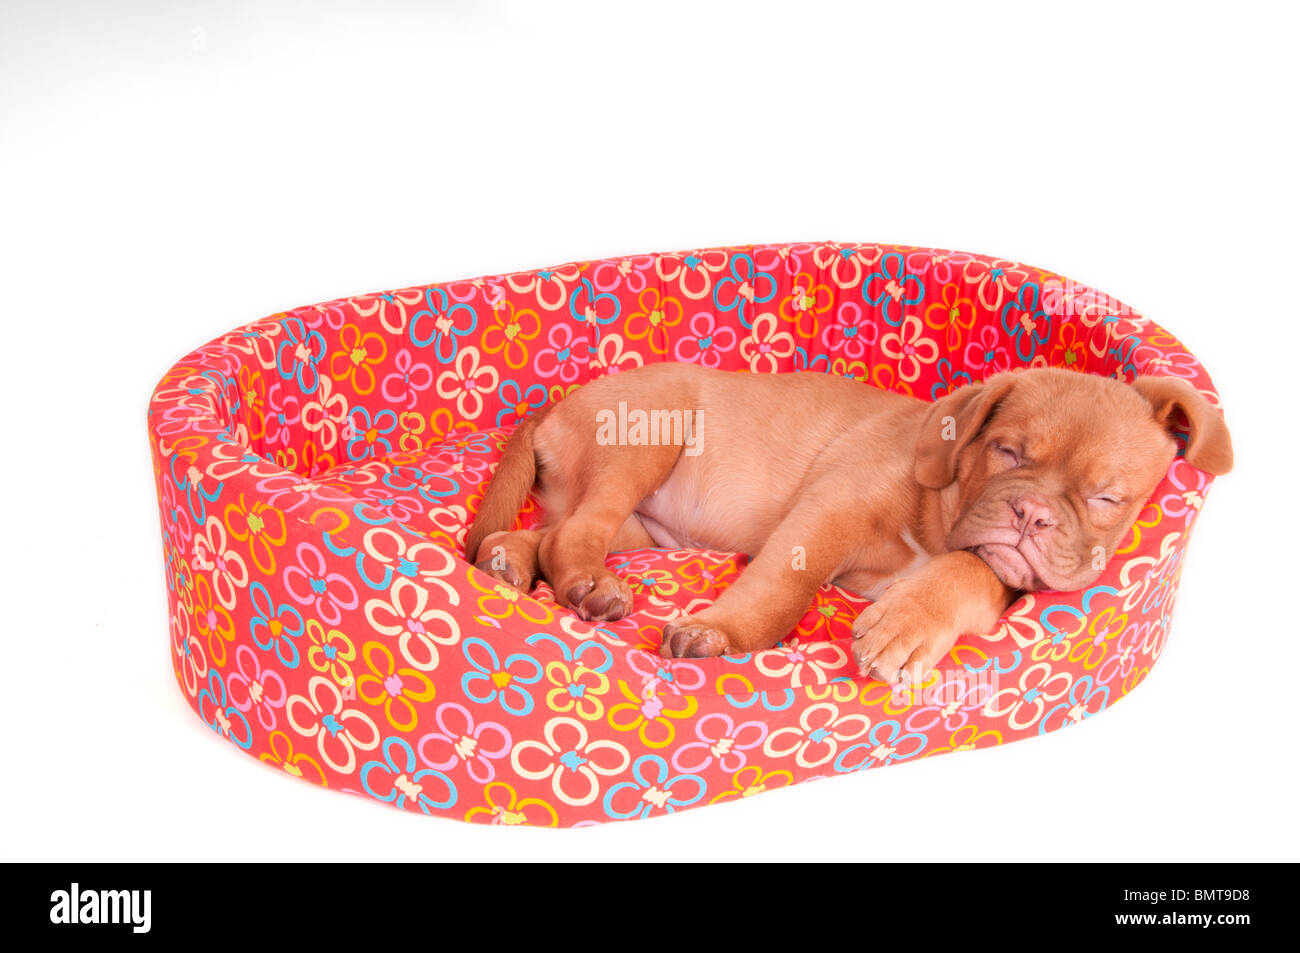 Un très petit chiot dormir dans son lit rose Banque D'Images